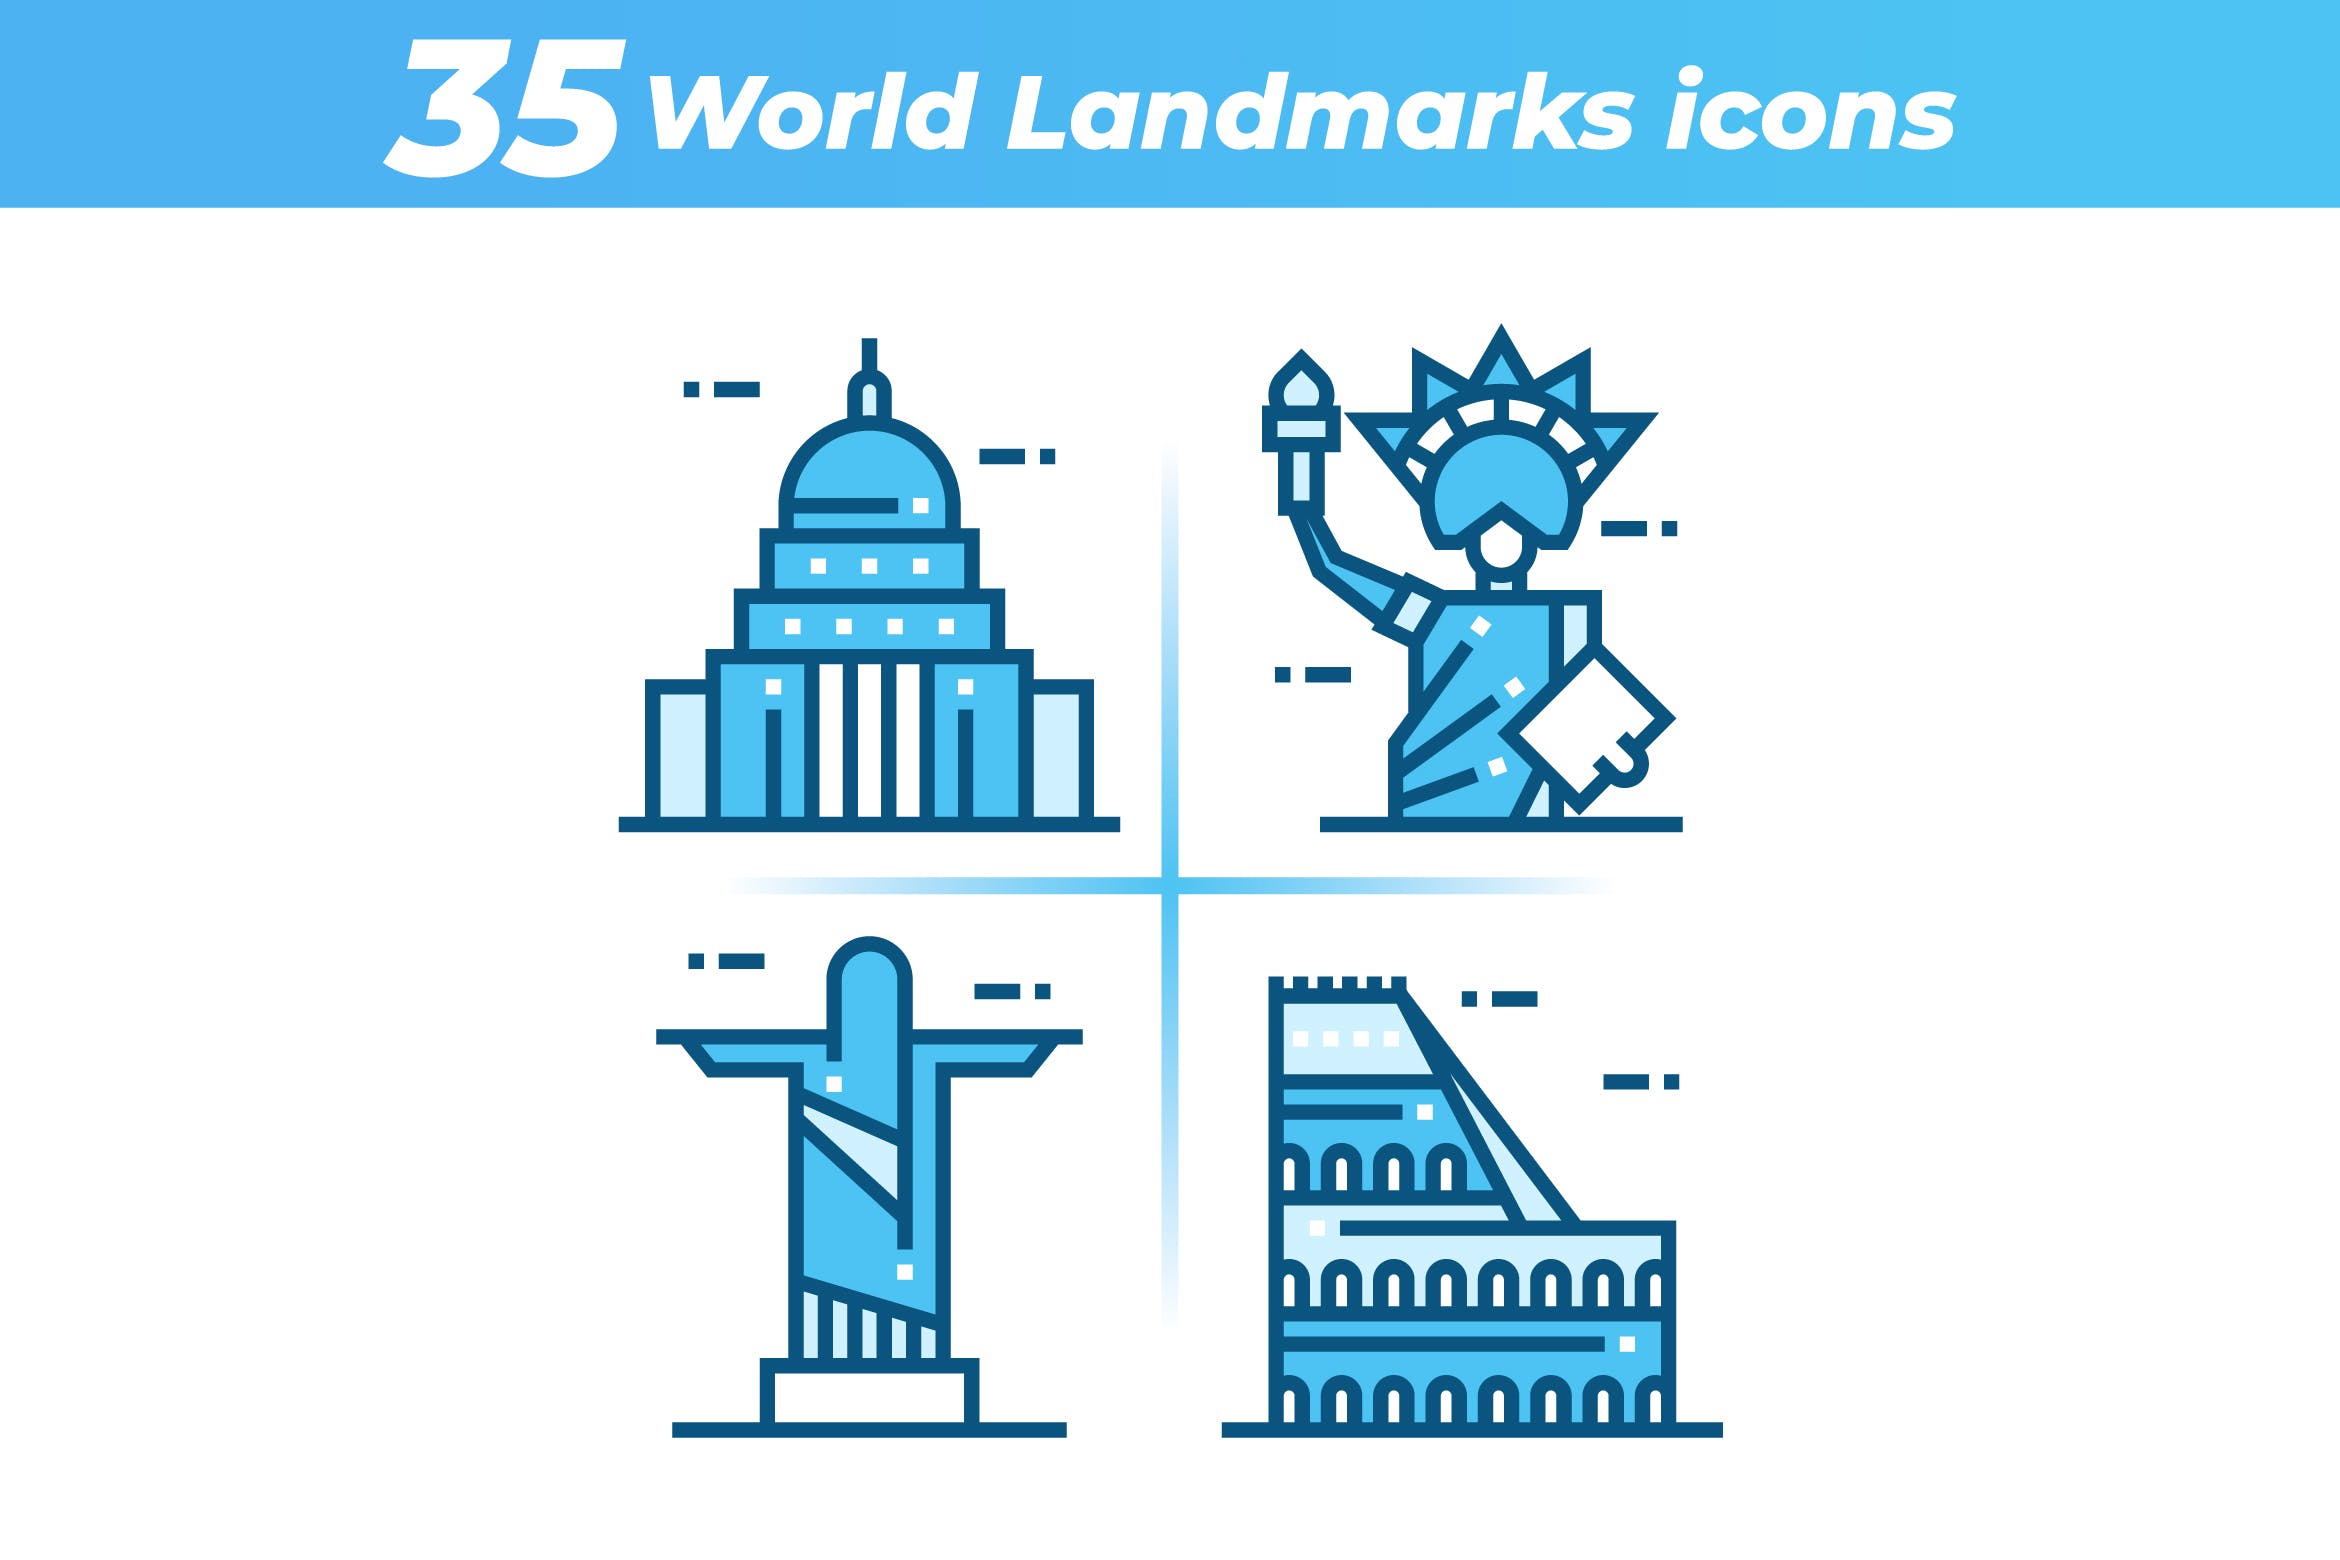 35枚世界地标主题矢量第一素材精选图标 35 World Landmarks Icons插图